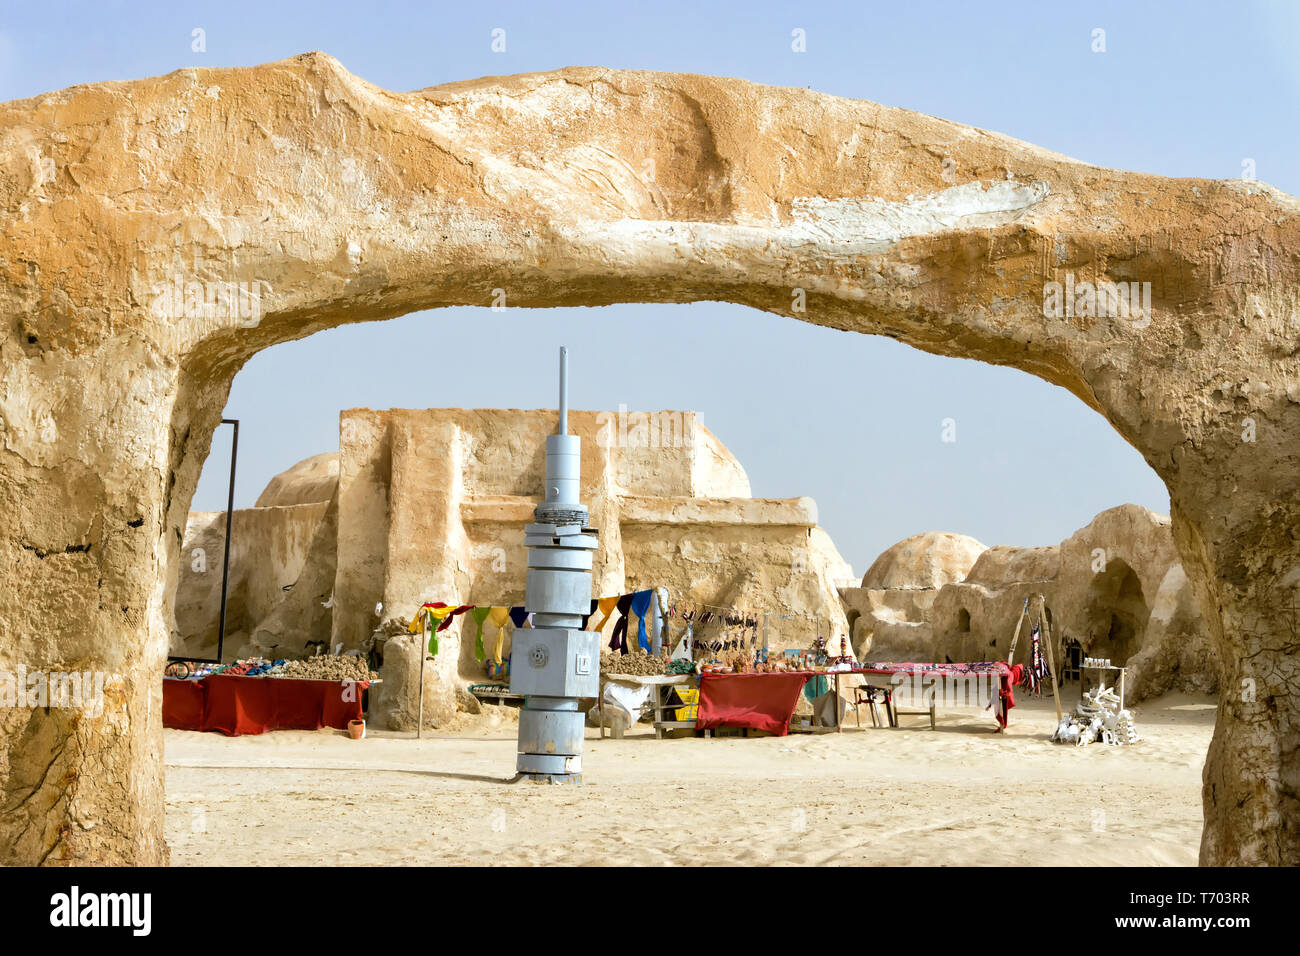 Kunsthandwerk und Souvenirs zum Verkauf in Ong Jemel Star Wars Lage in Tunesien Stockfoto